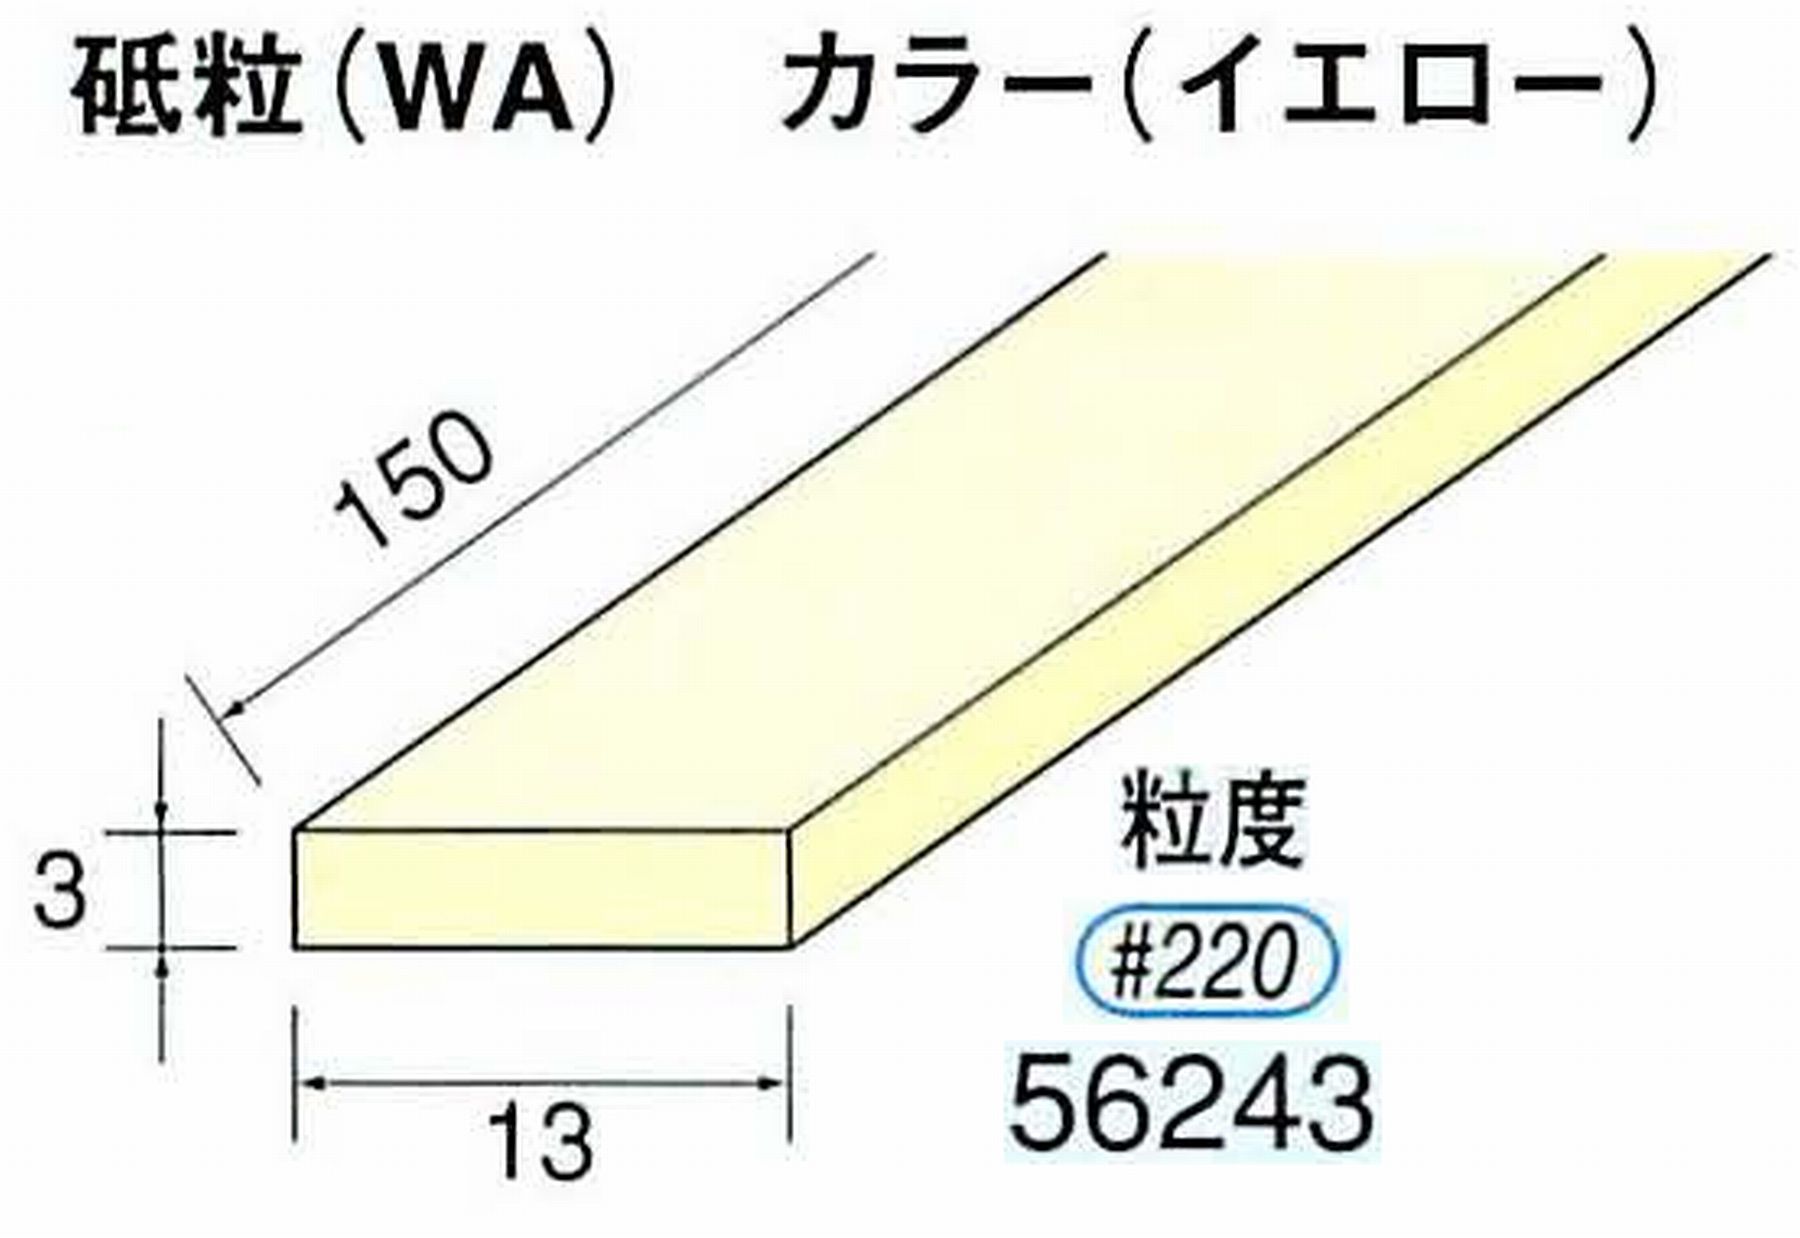 ナカニシ/NAKANISHI スティック砥石 イエロー・フィニッシュシリーズ 砥粒(WA) 56243